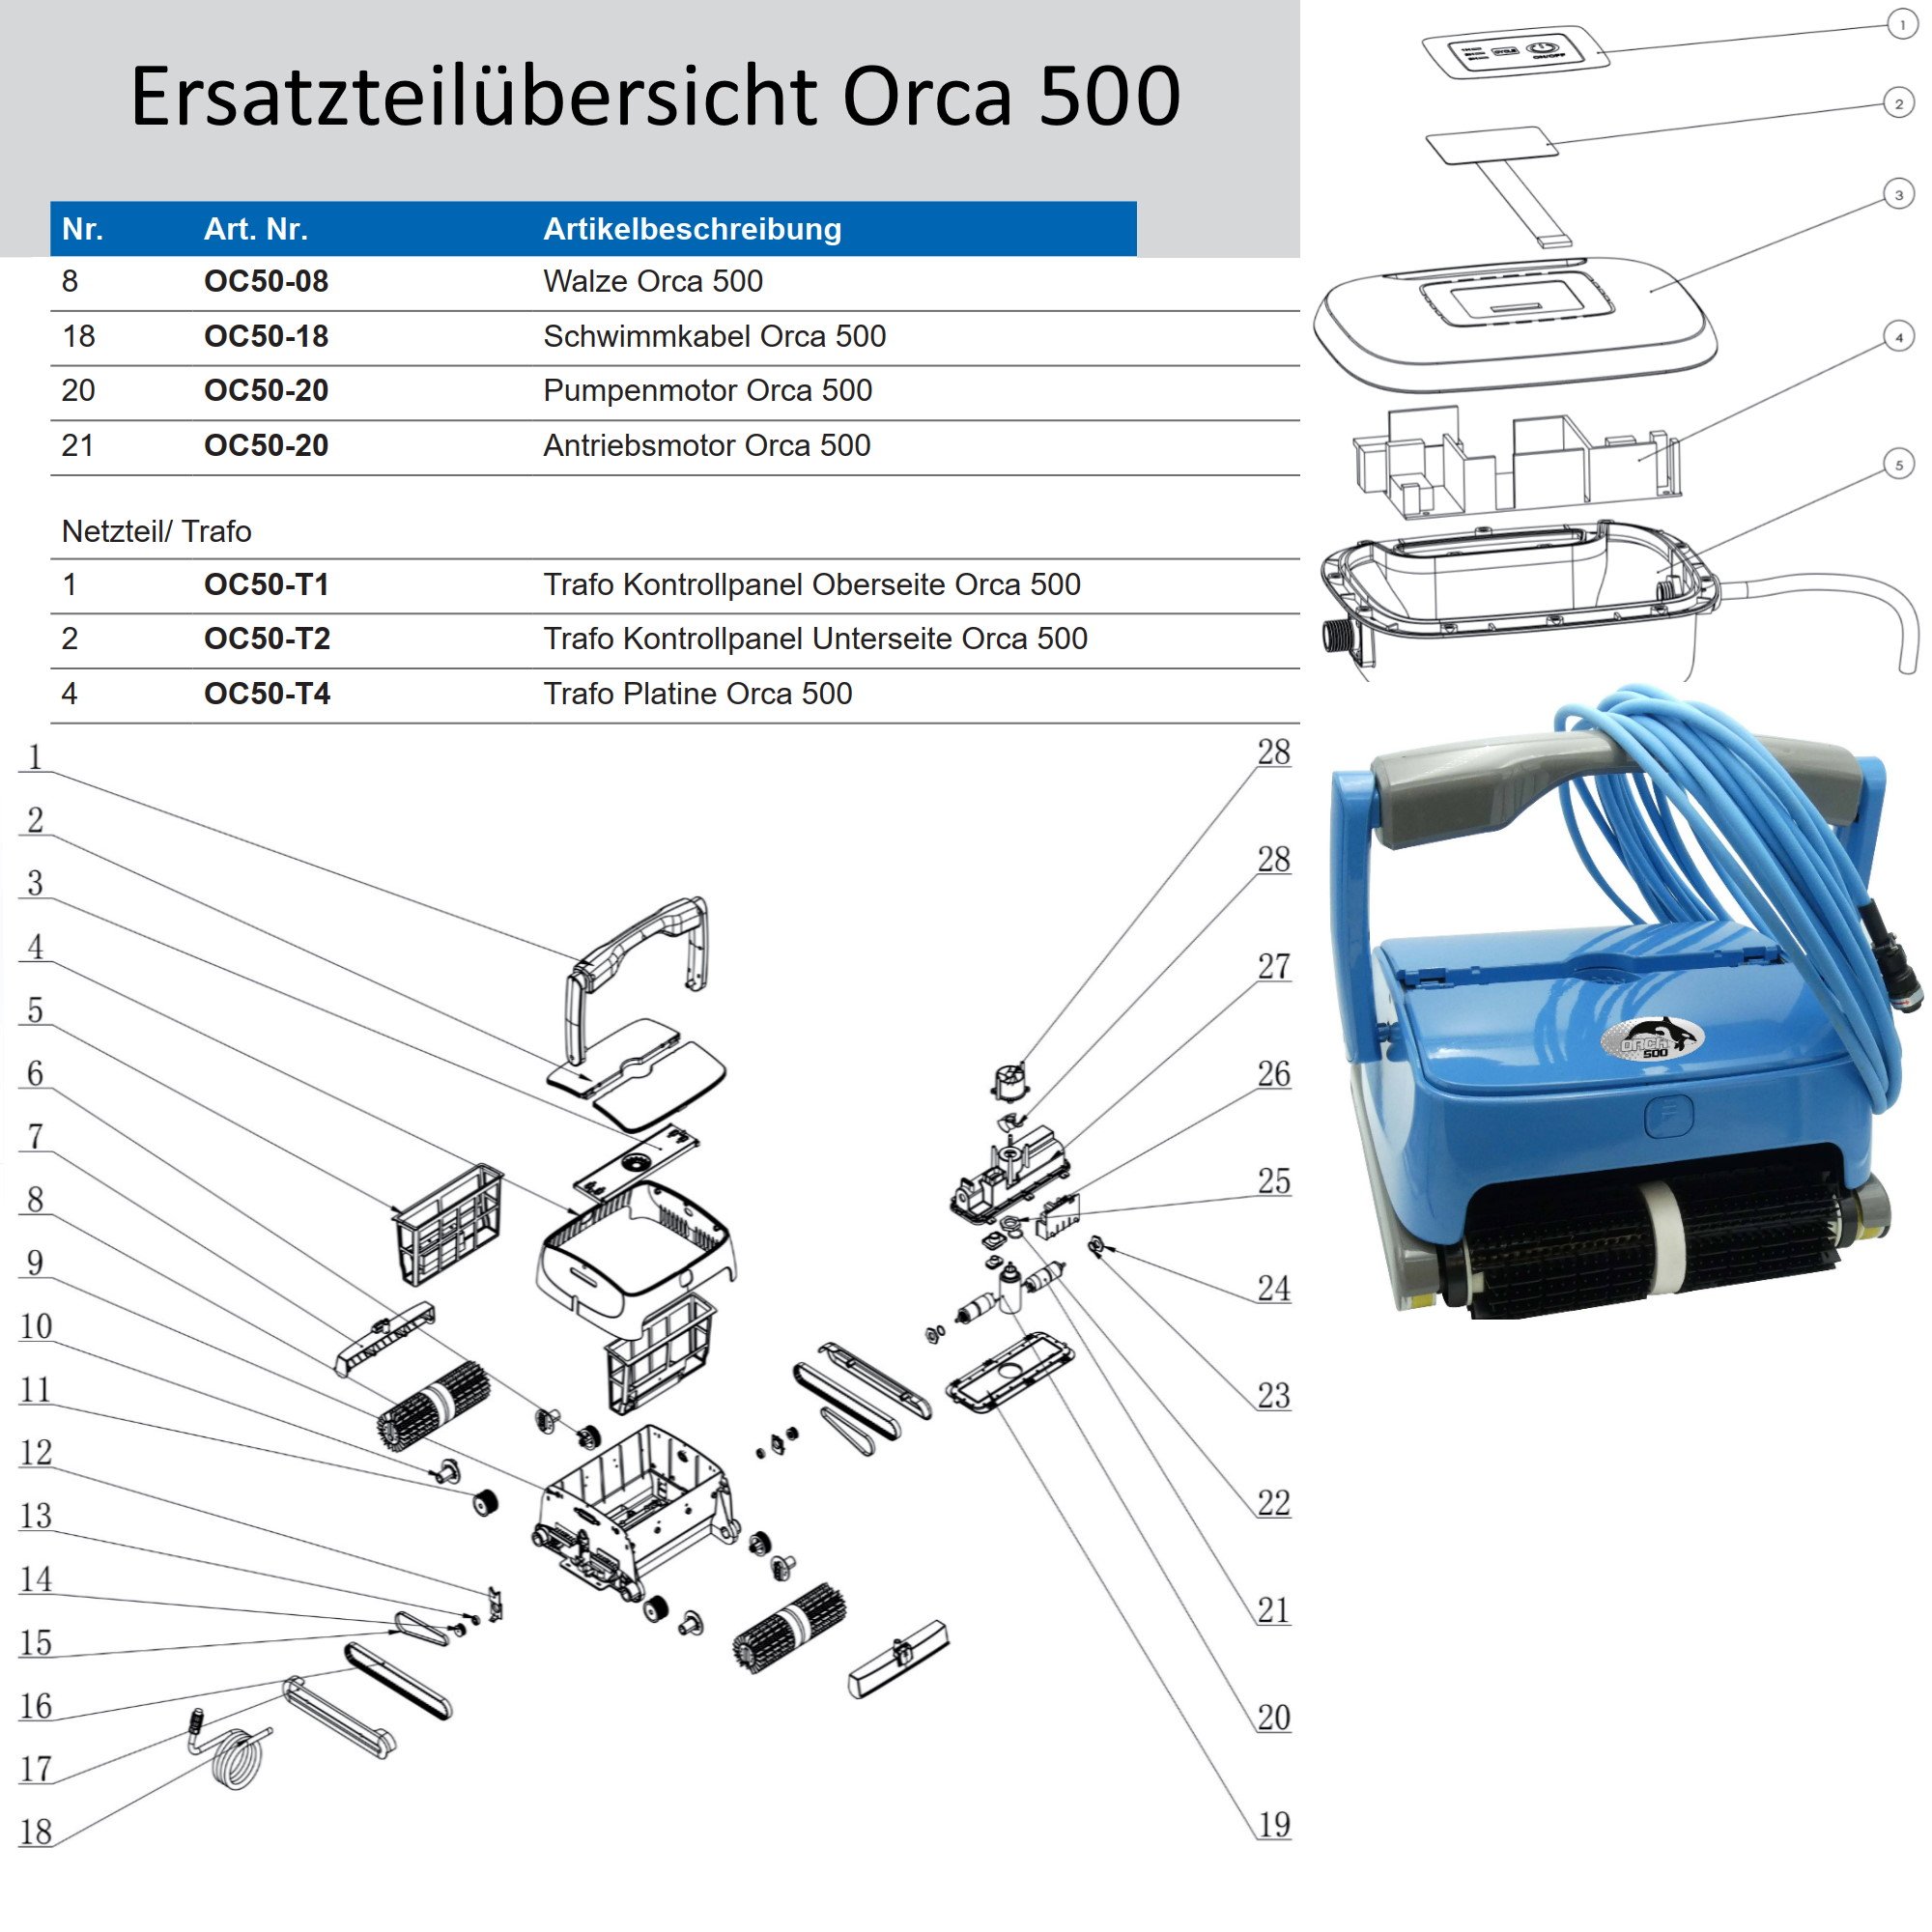 Antriebsmotor, Ersatzteil für Orca 500